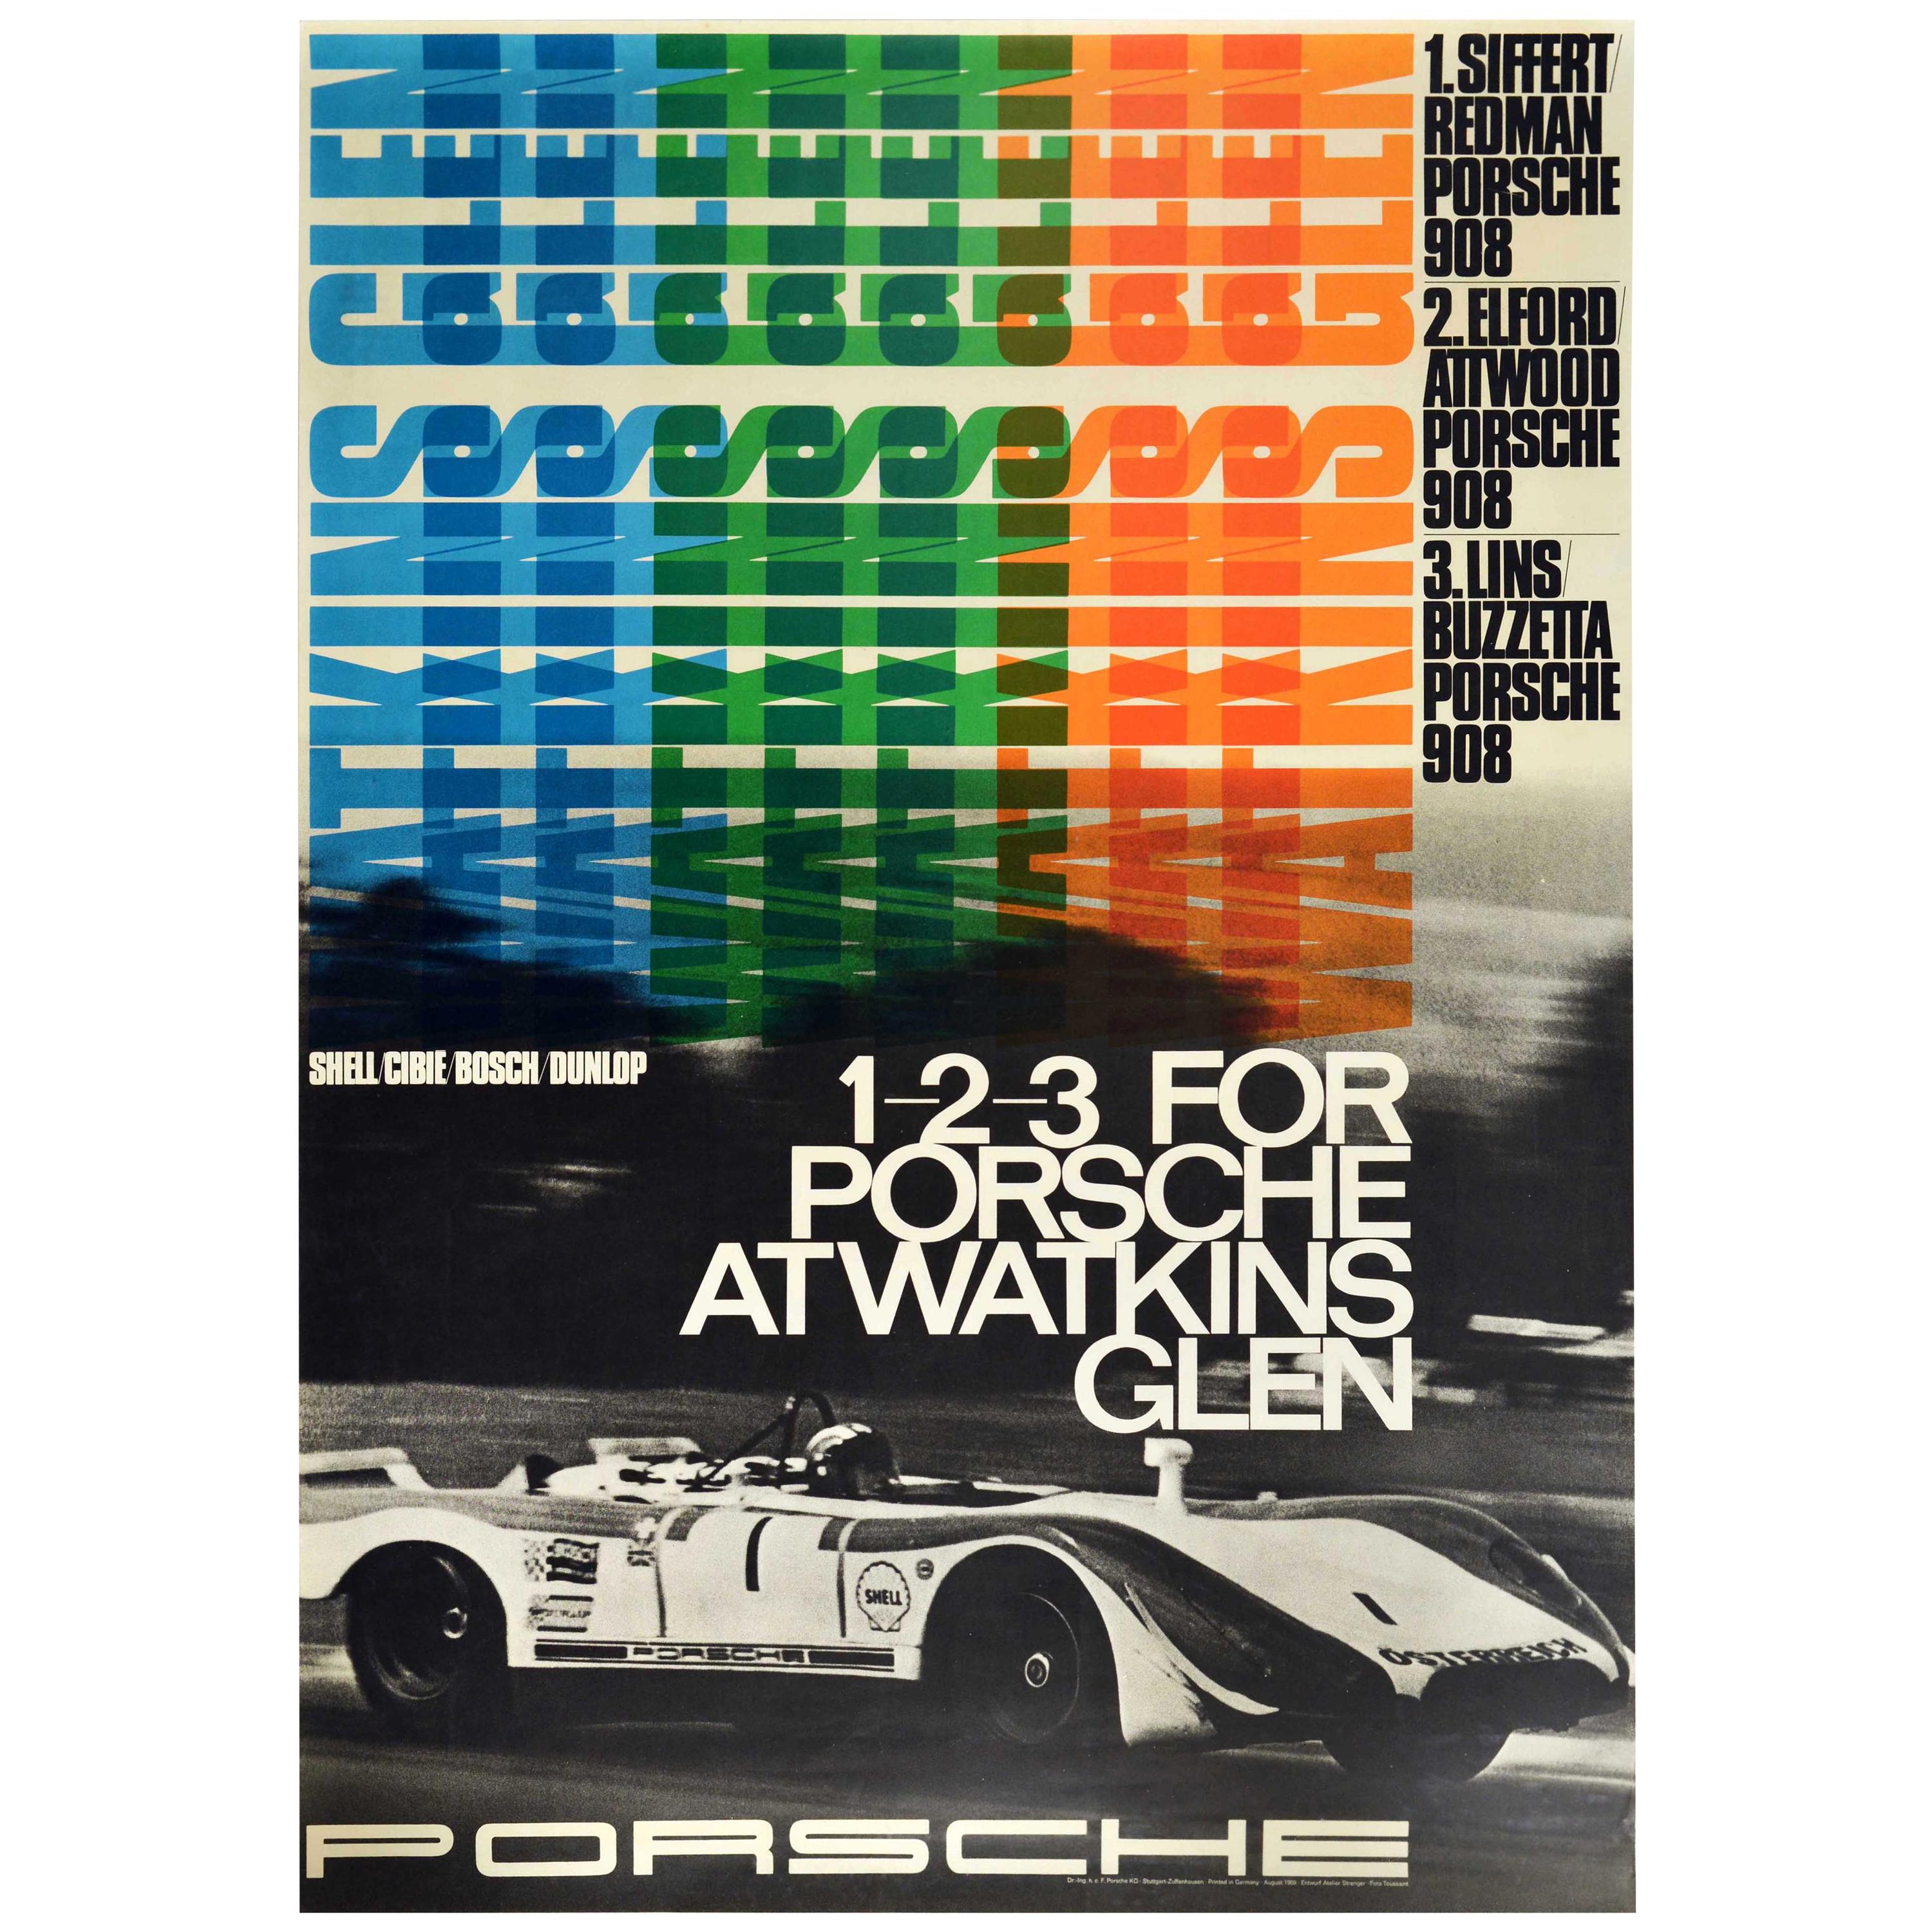 Original Vintage Auto Racing Poster 1-2-3 For Porsche At Watkins Glen  Motorsport For Sale at 1stDibs | watkins glen poster, porsche racing posters,  vintage racing posters original